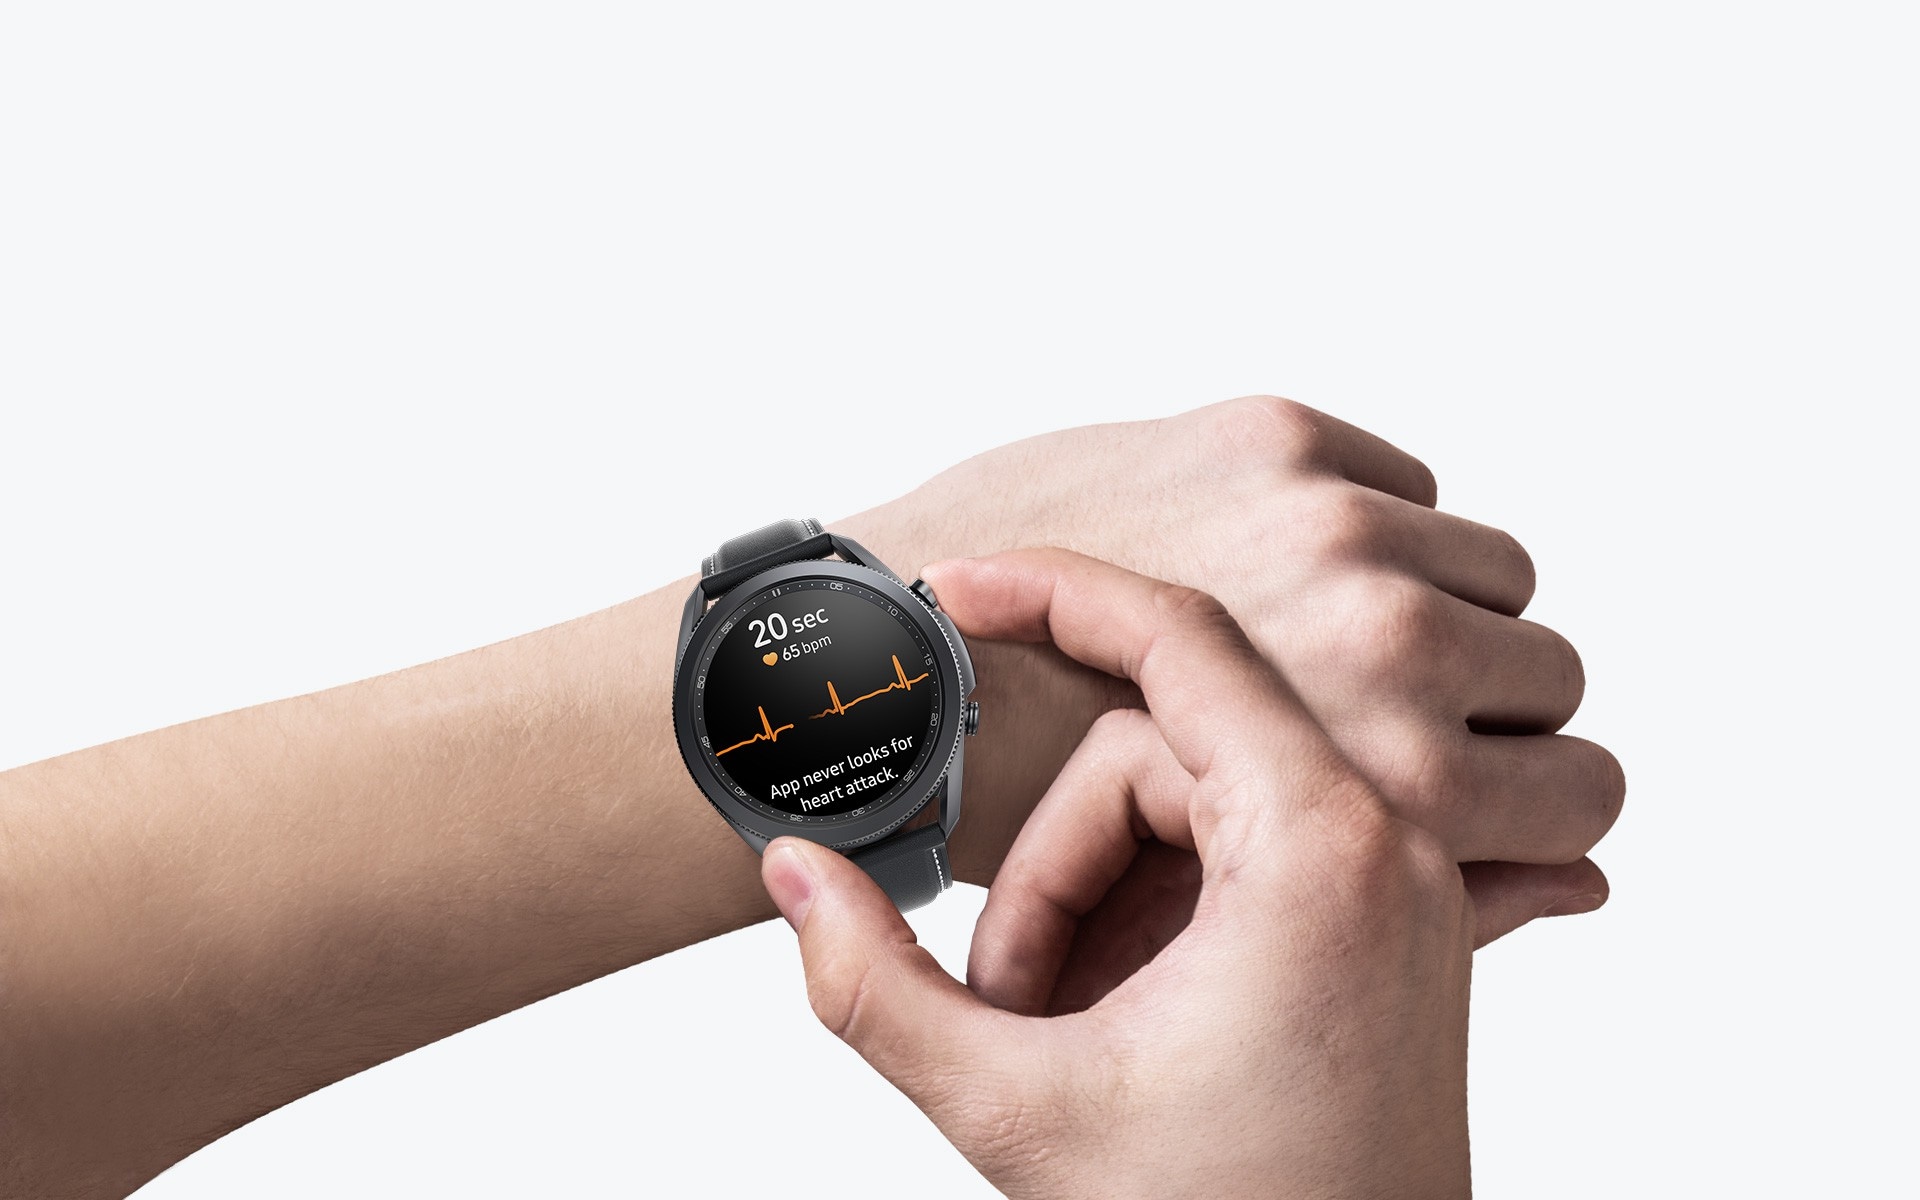 Vue d'un bras portant la Galaxy Watch3 45 mm couleur Mystic Black. Une main appuie sur un bouton sur le côté de la montre pour mesurer l'ECG, avec son interface graphique visible sur le cadran de la montre.